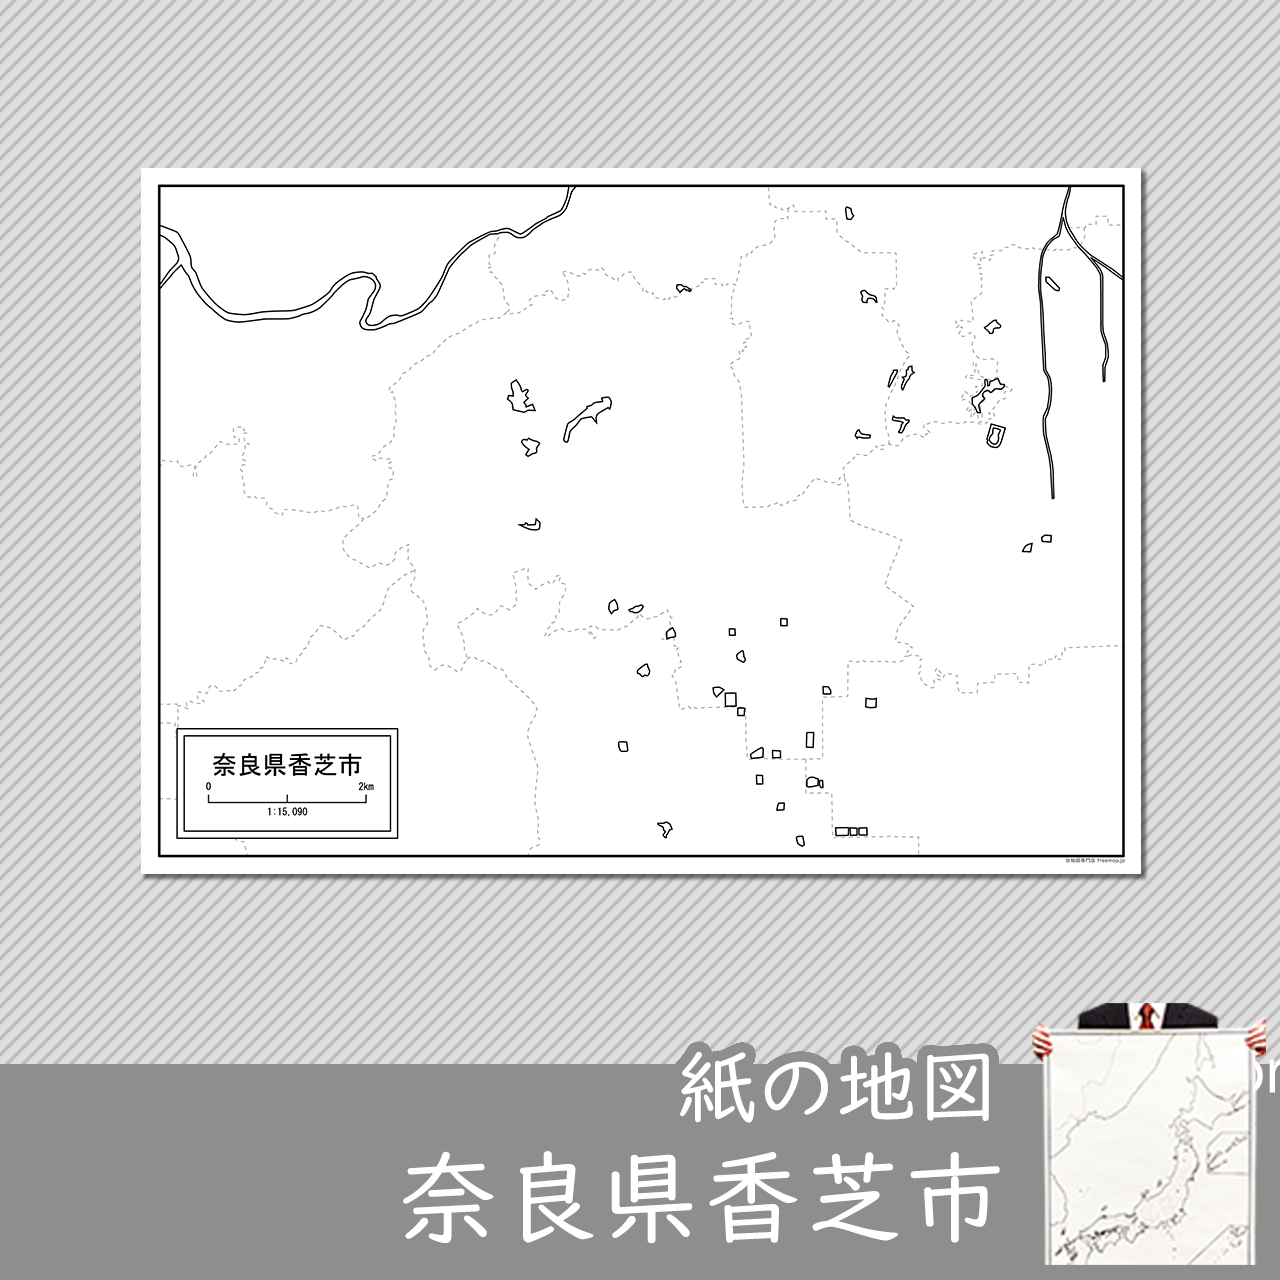 香芝市の紙の白地図のサムネイル